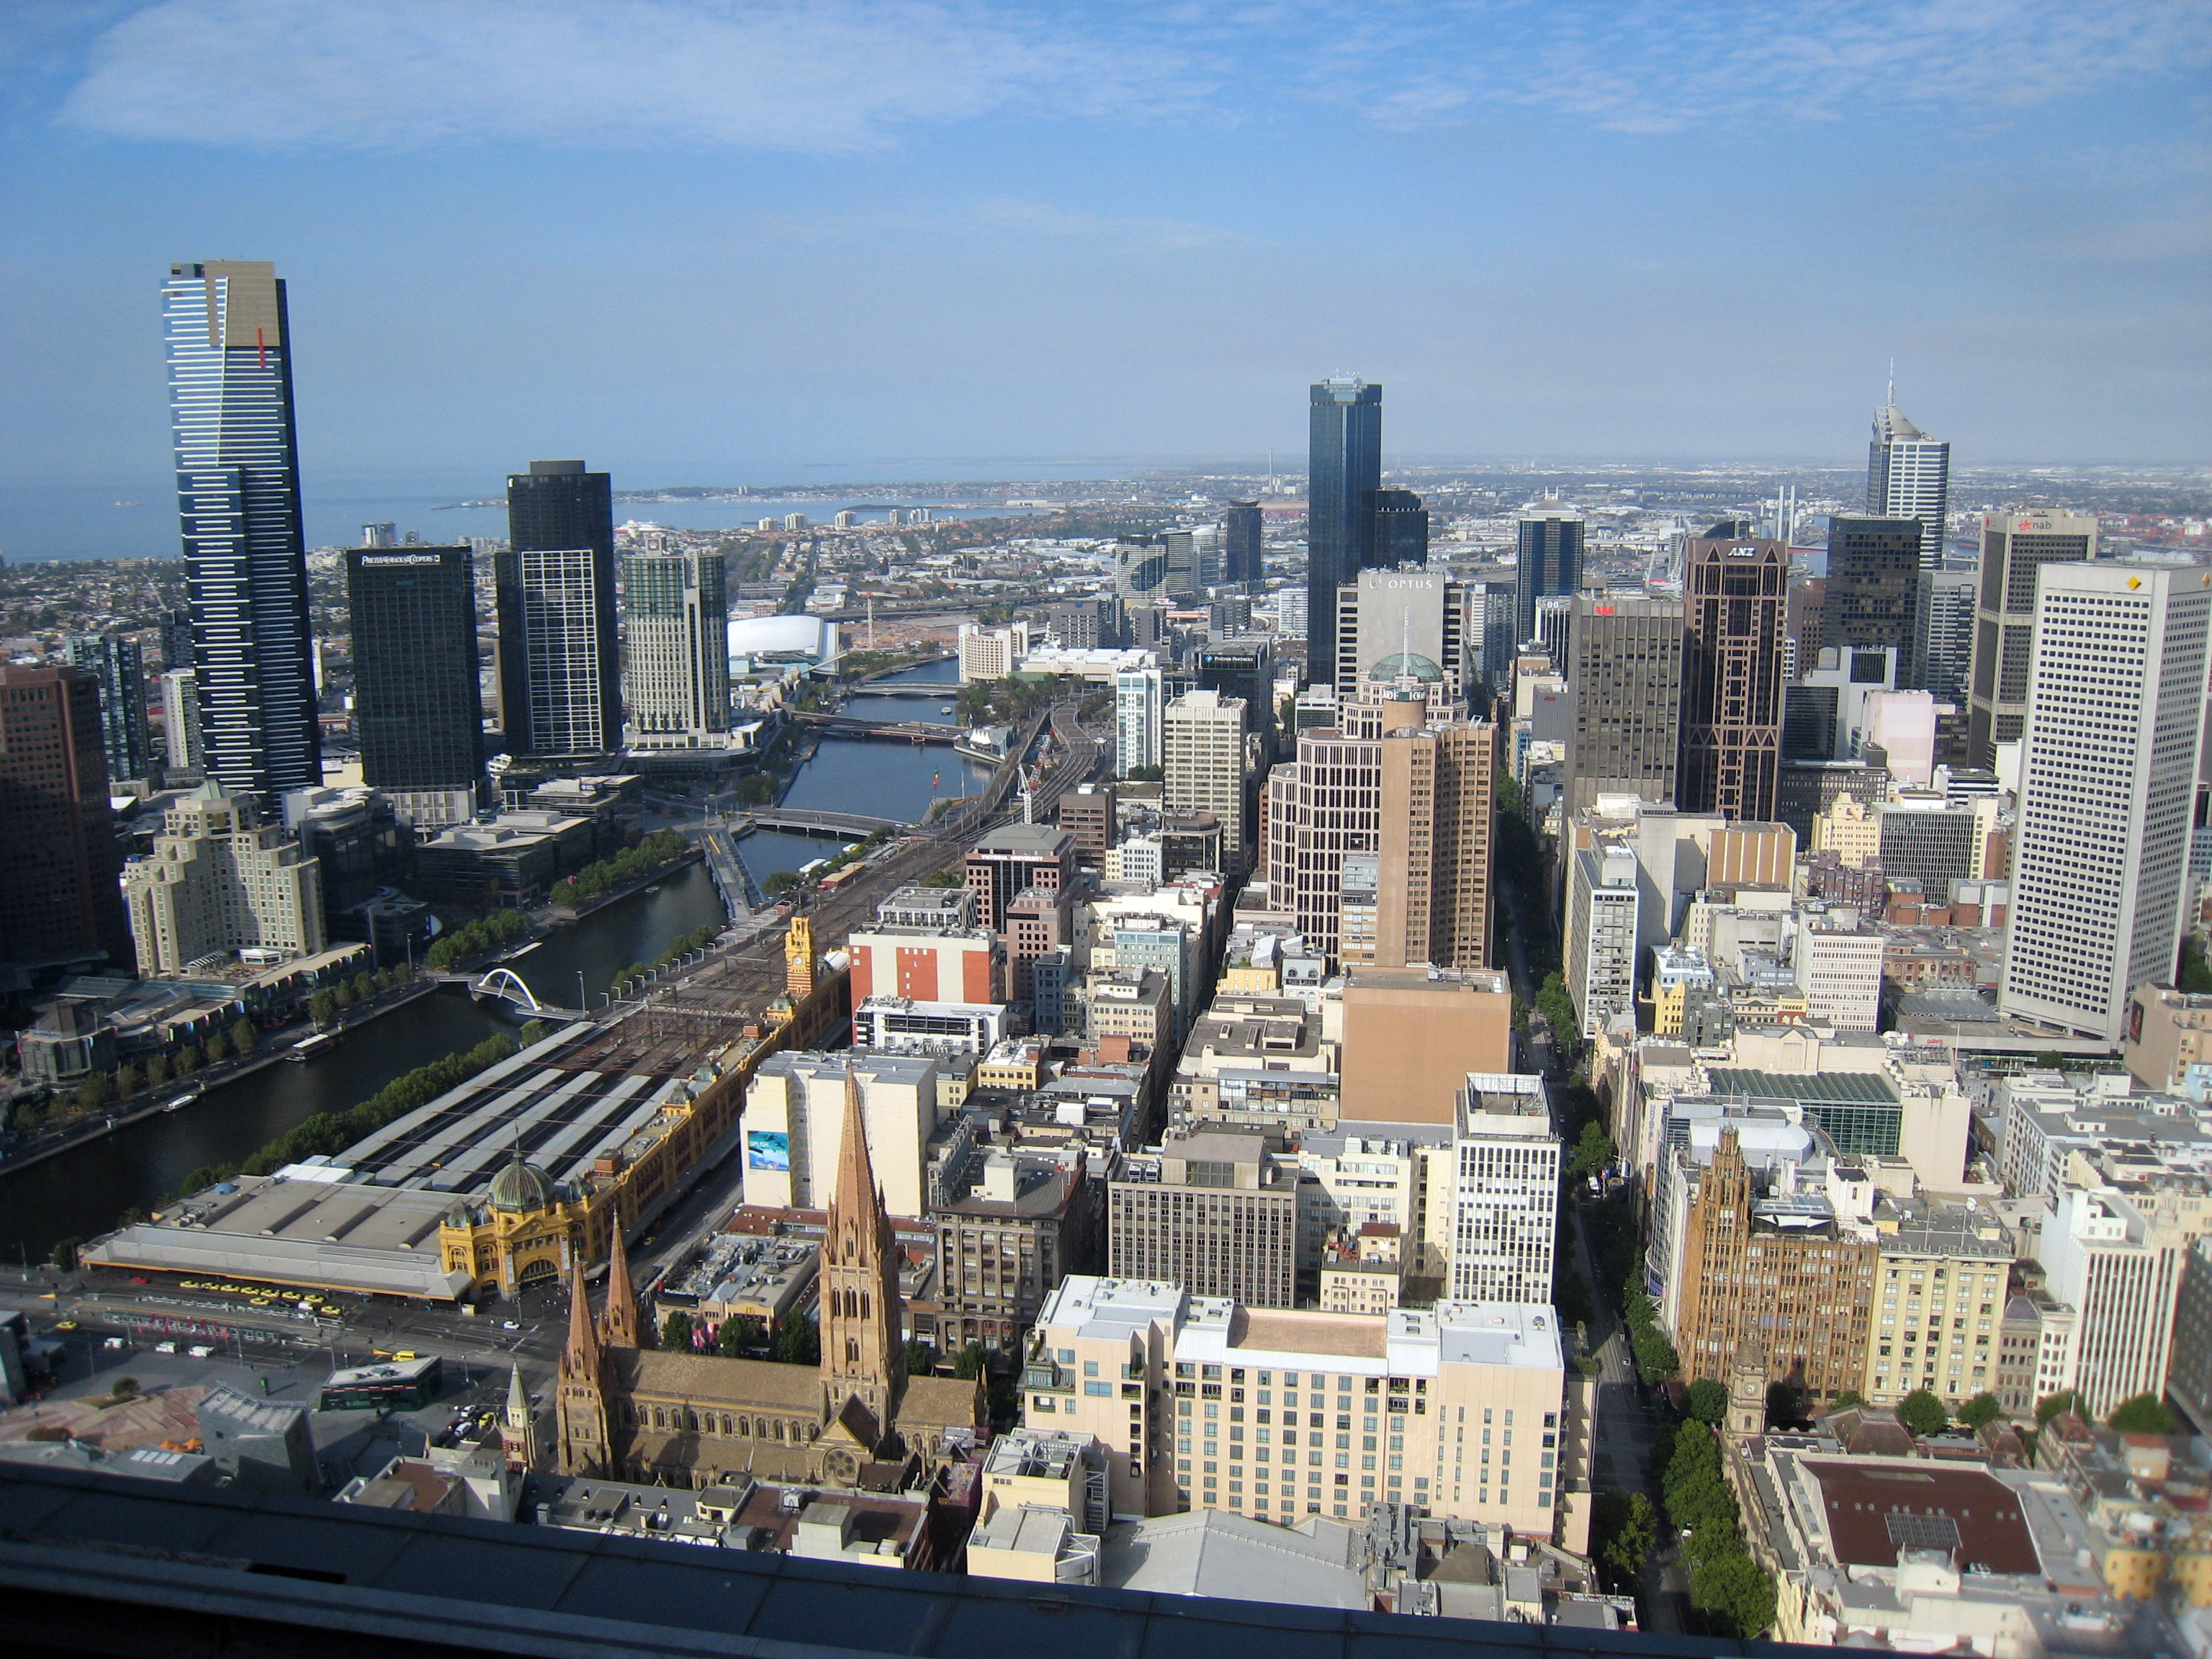 здания, Мельбурн, города - обои на рабочий стол